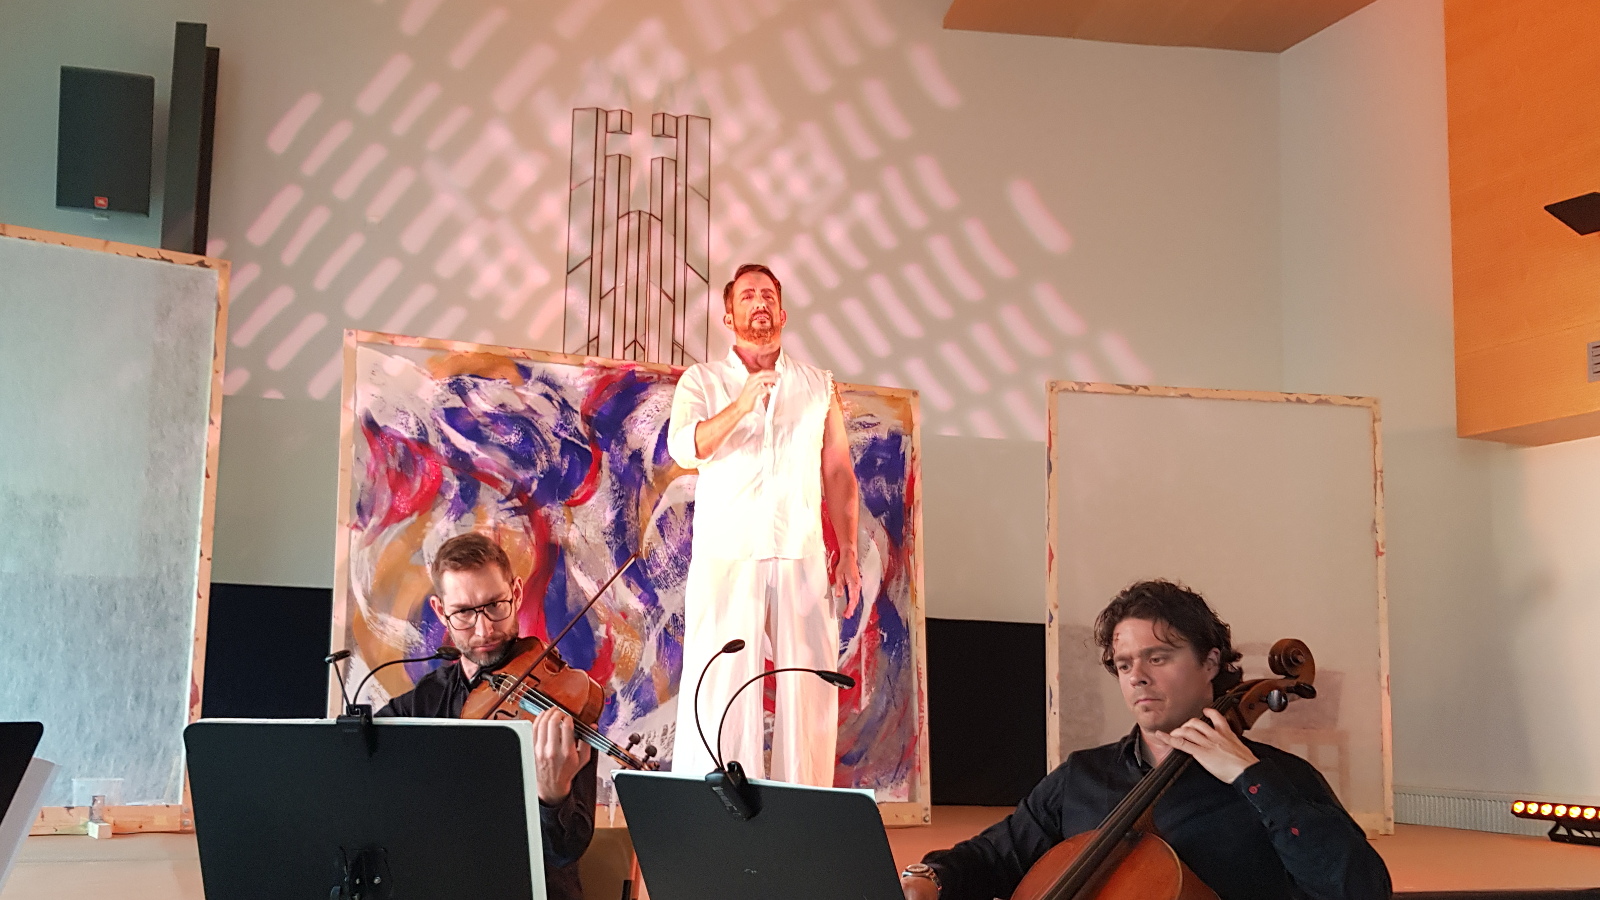  Kuvassa on keskellä valkoisessa asussa Kevin Greenlaw ja hänen takanaan on aaltoileva, valko-sini-punainen taulu. Edessä ovat viulisti Rèmi Moingeonja sellisti Samuli Peltonen mustissa vaatteissa edessään nuottitelineet.